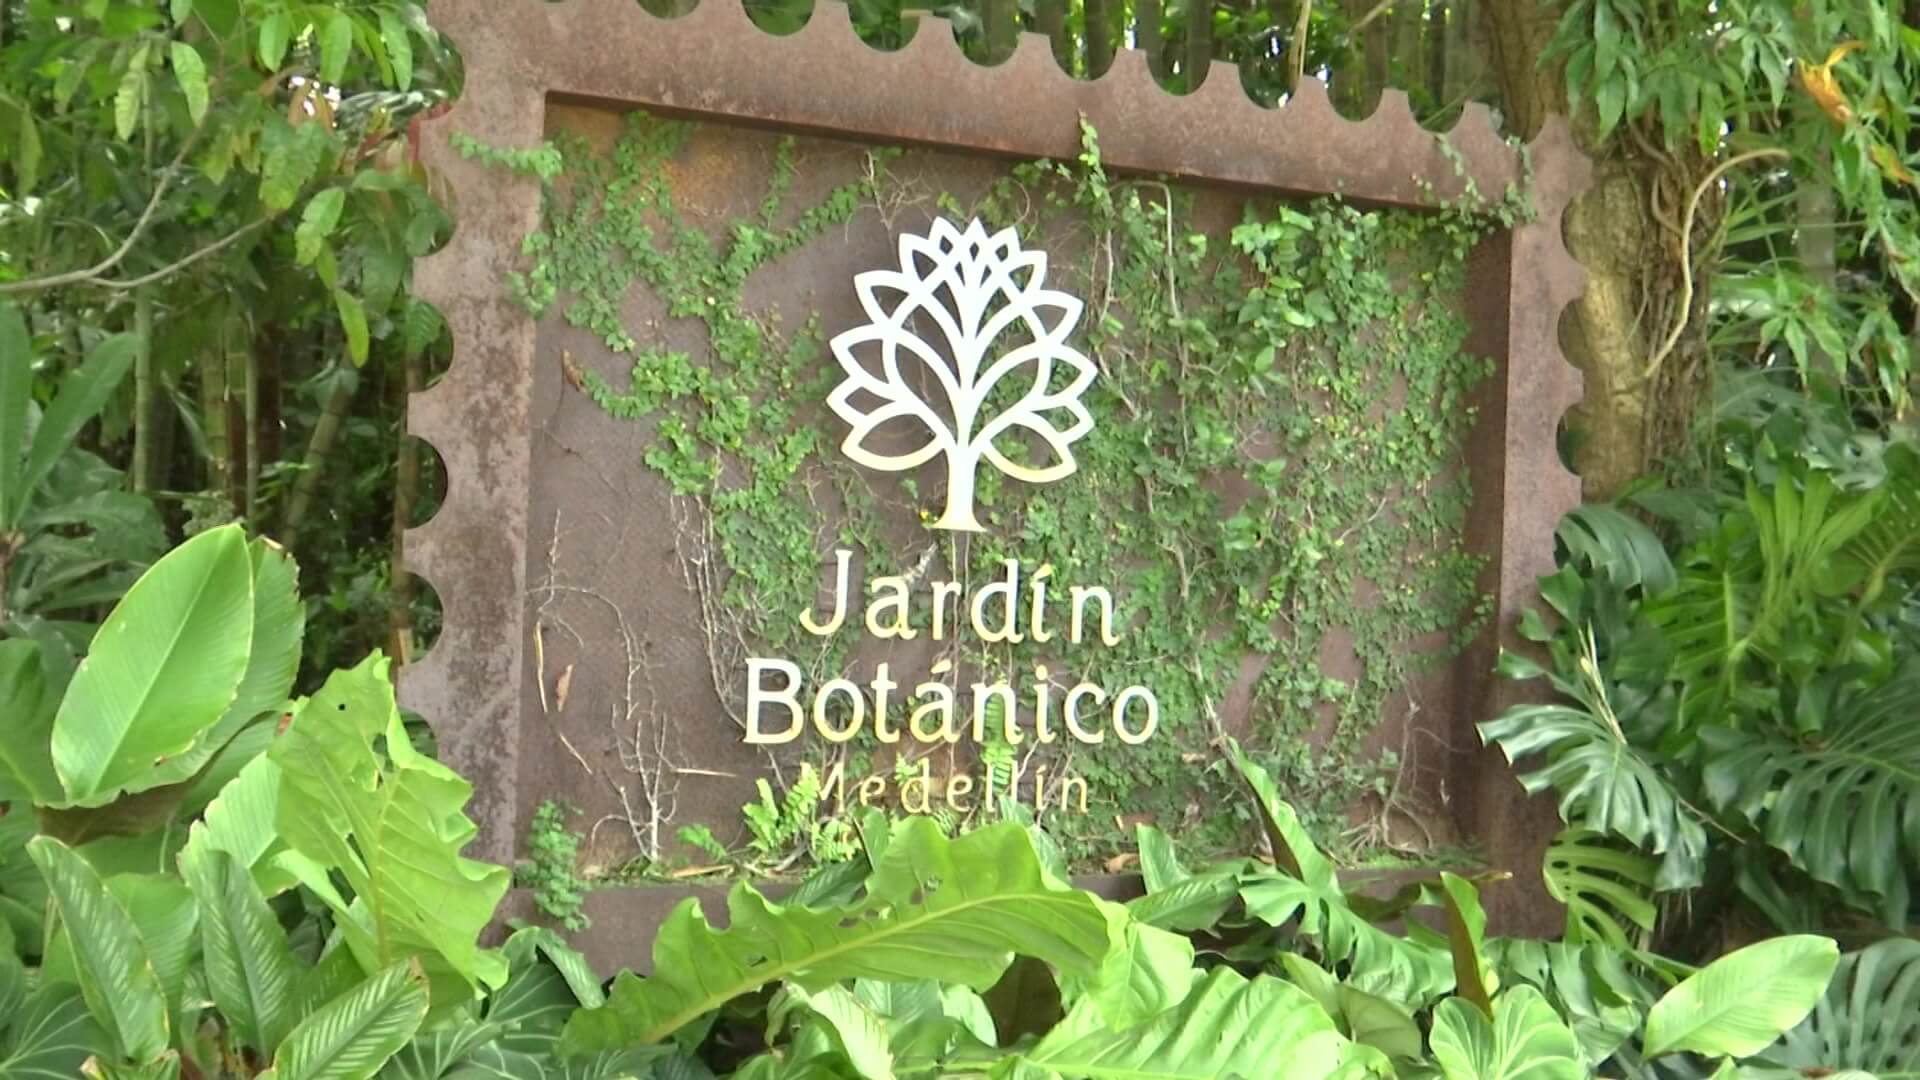 Áreas verdes, de nuevo a cargo del Jardín Botánico